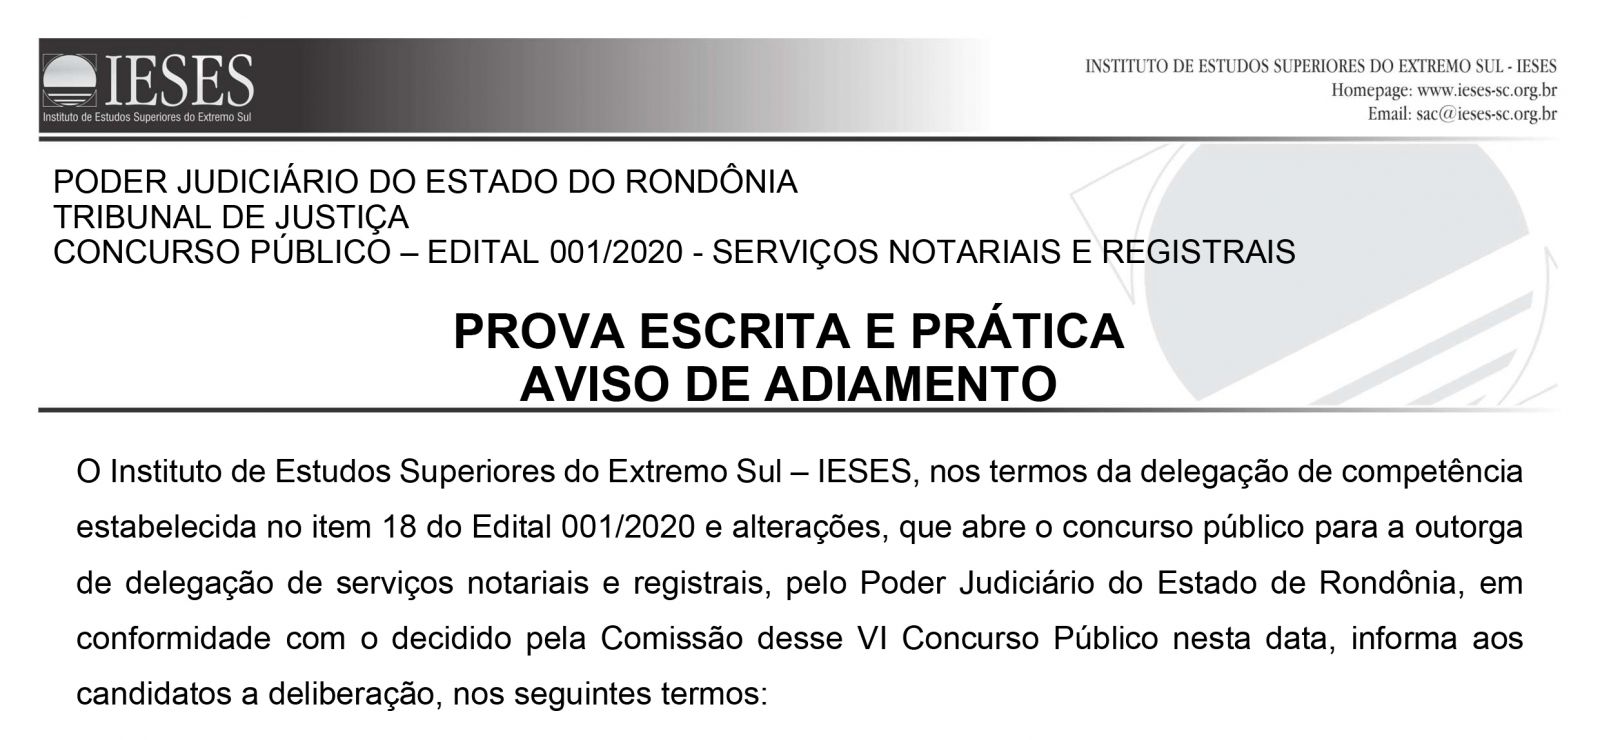 Avanço da Covid-19 em Rondônia força o adiamento das provas do Concurso de Outorga do TJ - News Rondônia